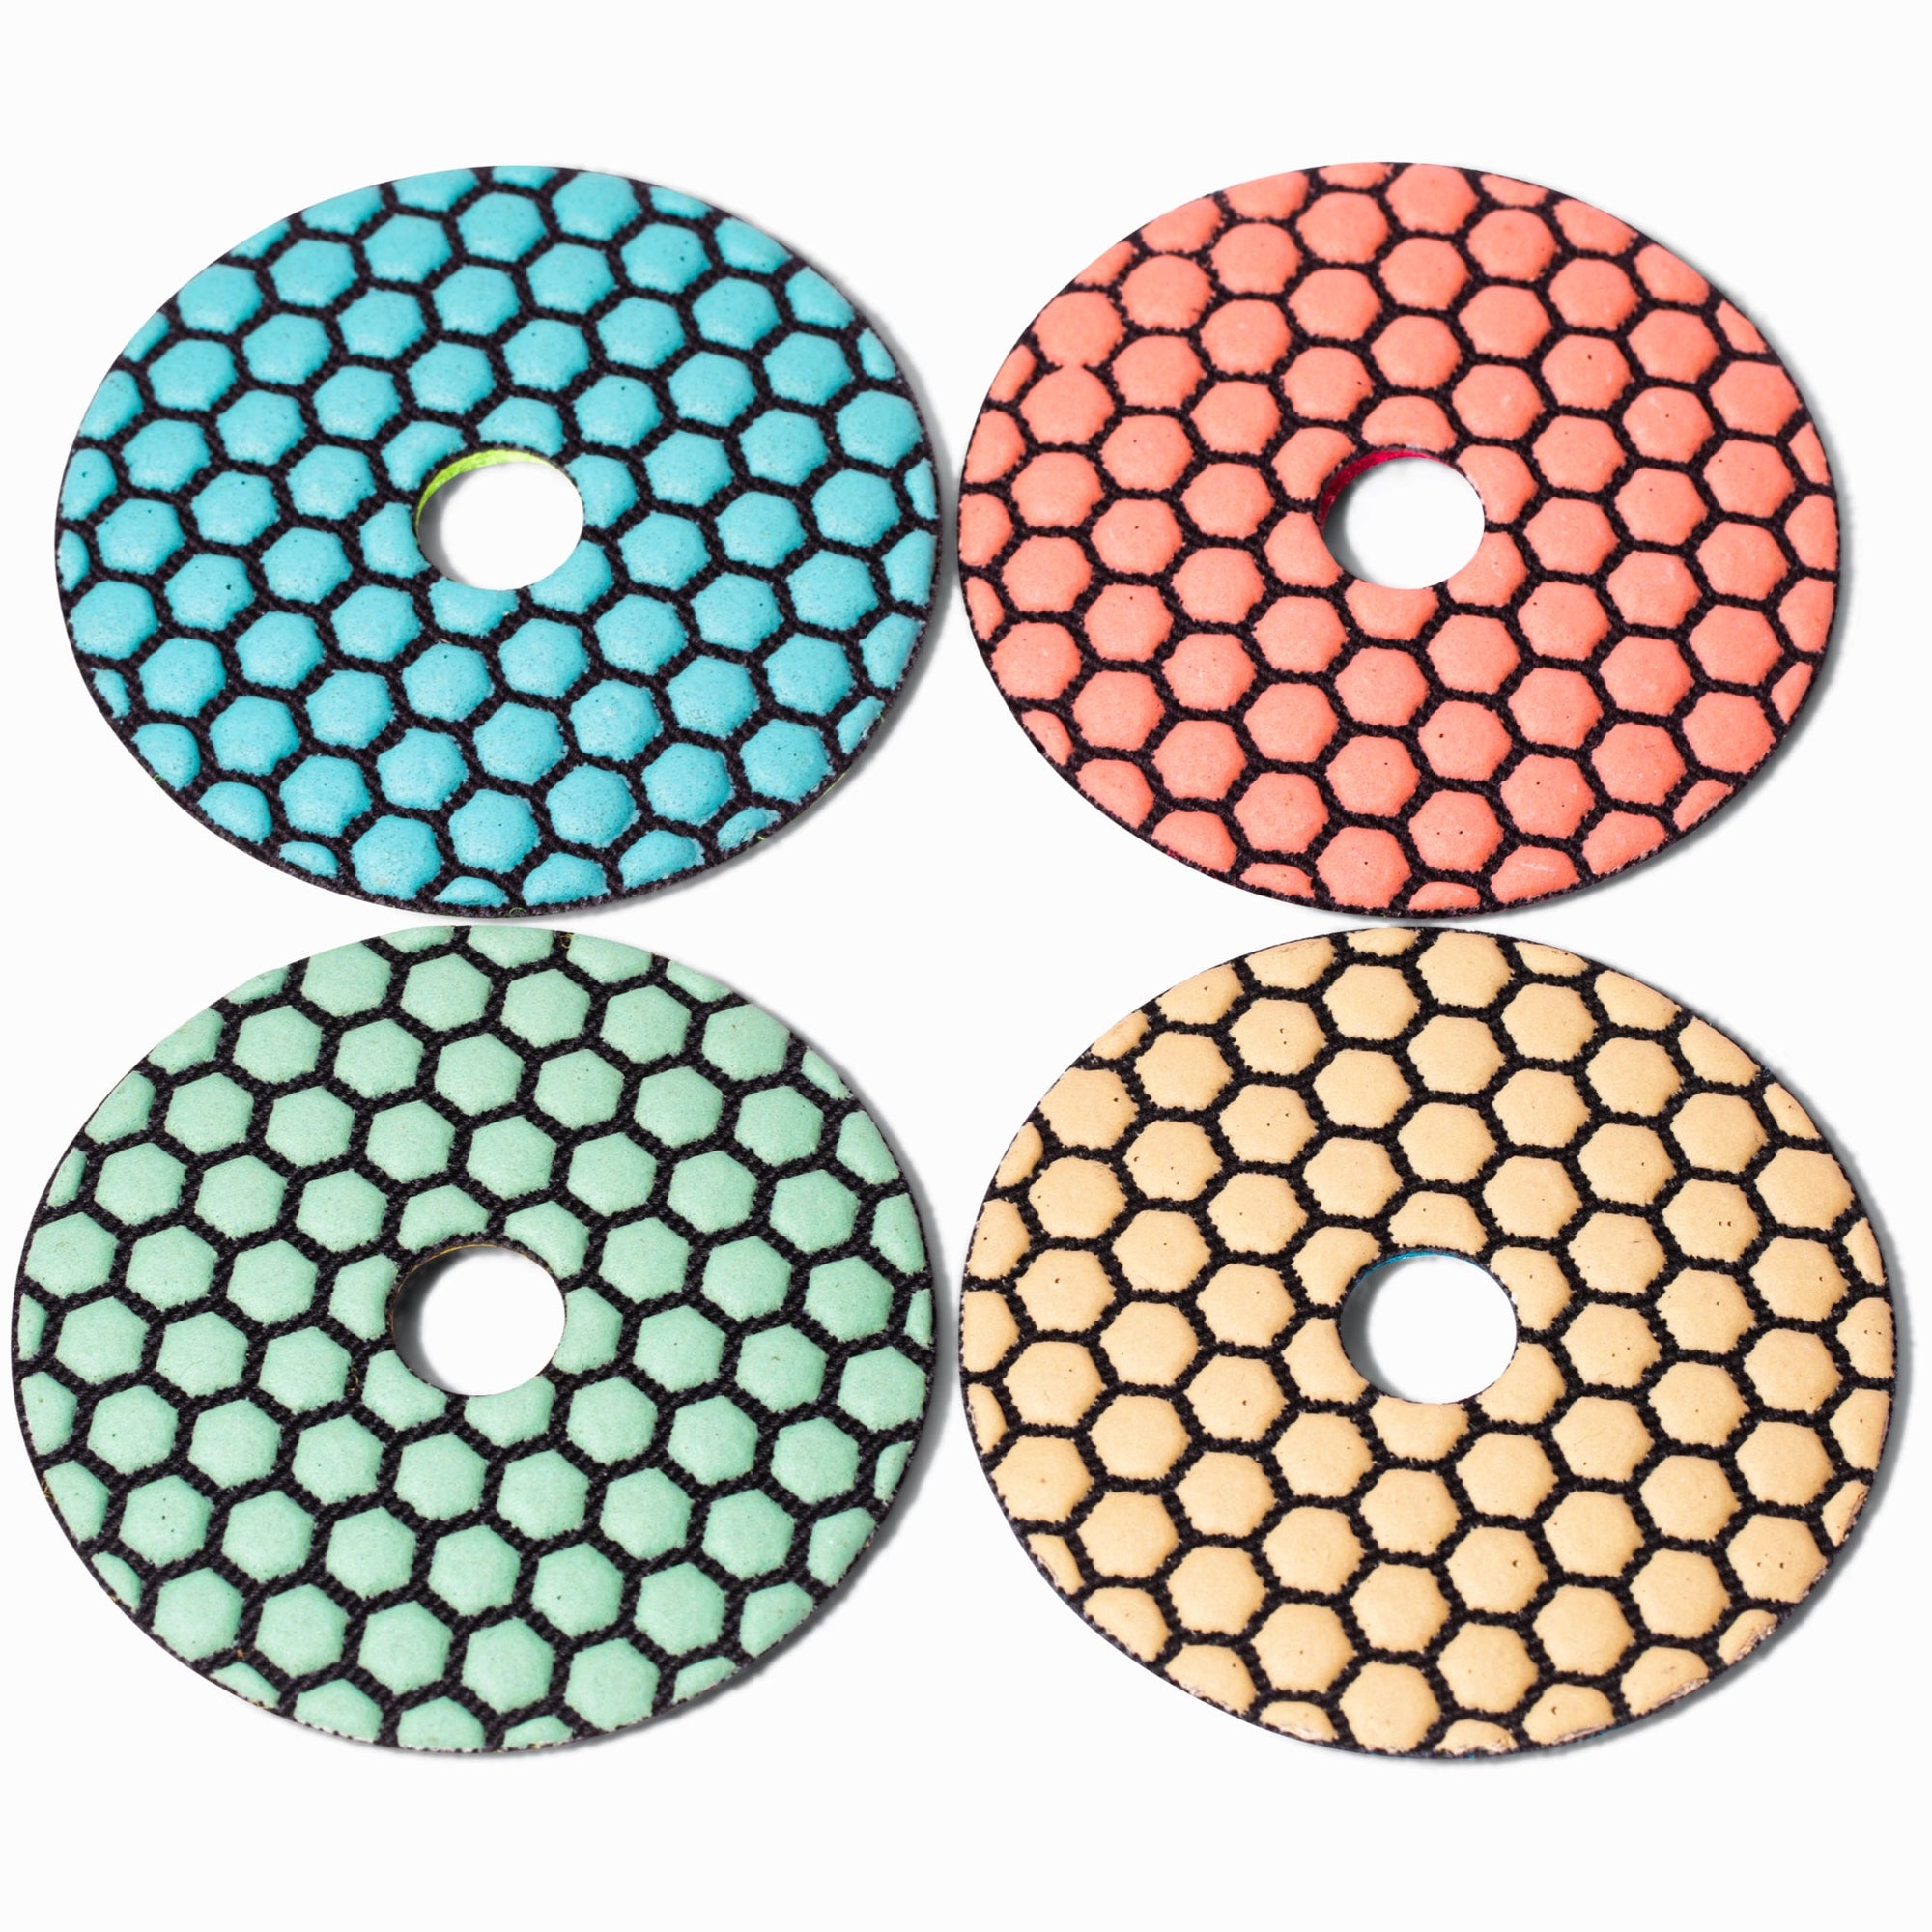 Calidad 4" Honeycomb Polishing Combo (grits 50-100-200-400) - Calidad Tools